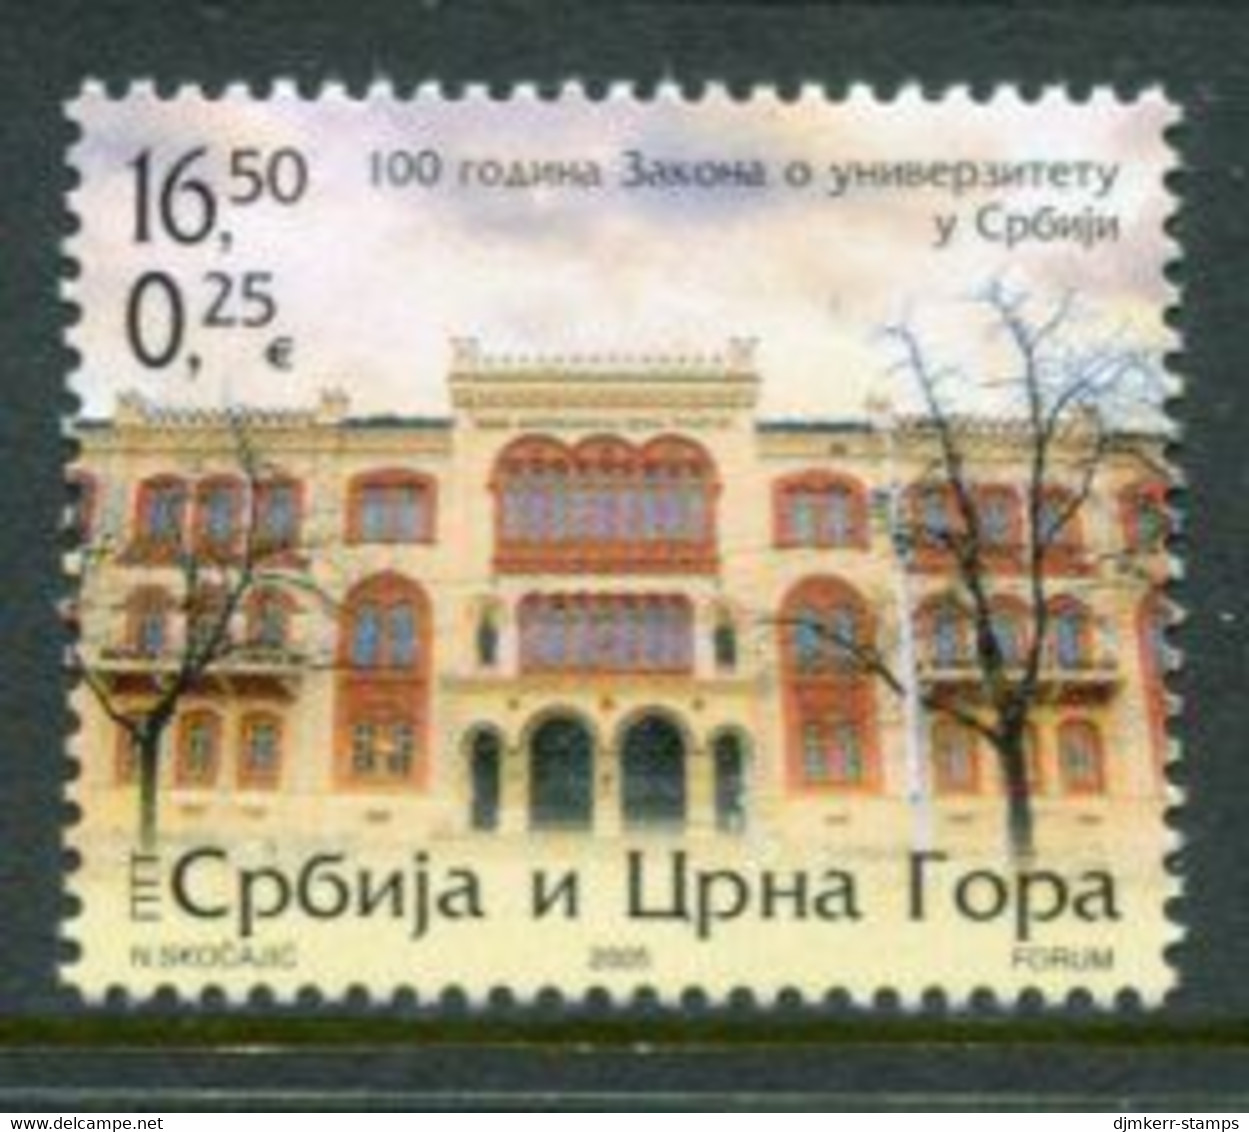 YUGOSLAVIA (Serbia & Montenegro) 2005 University Centenary MNH / **  Michel 3248 - Neufs